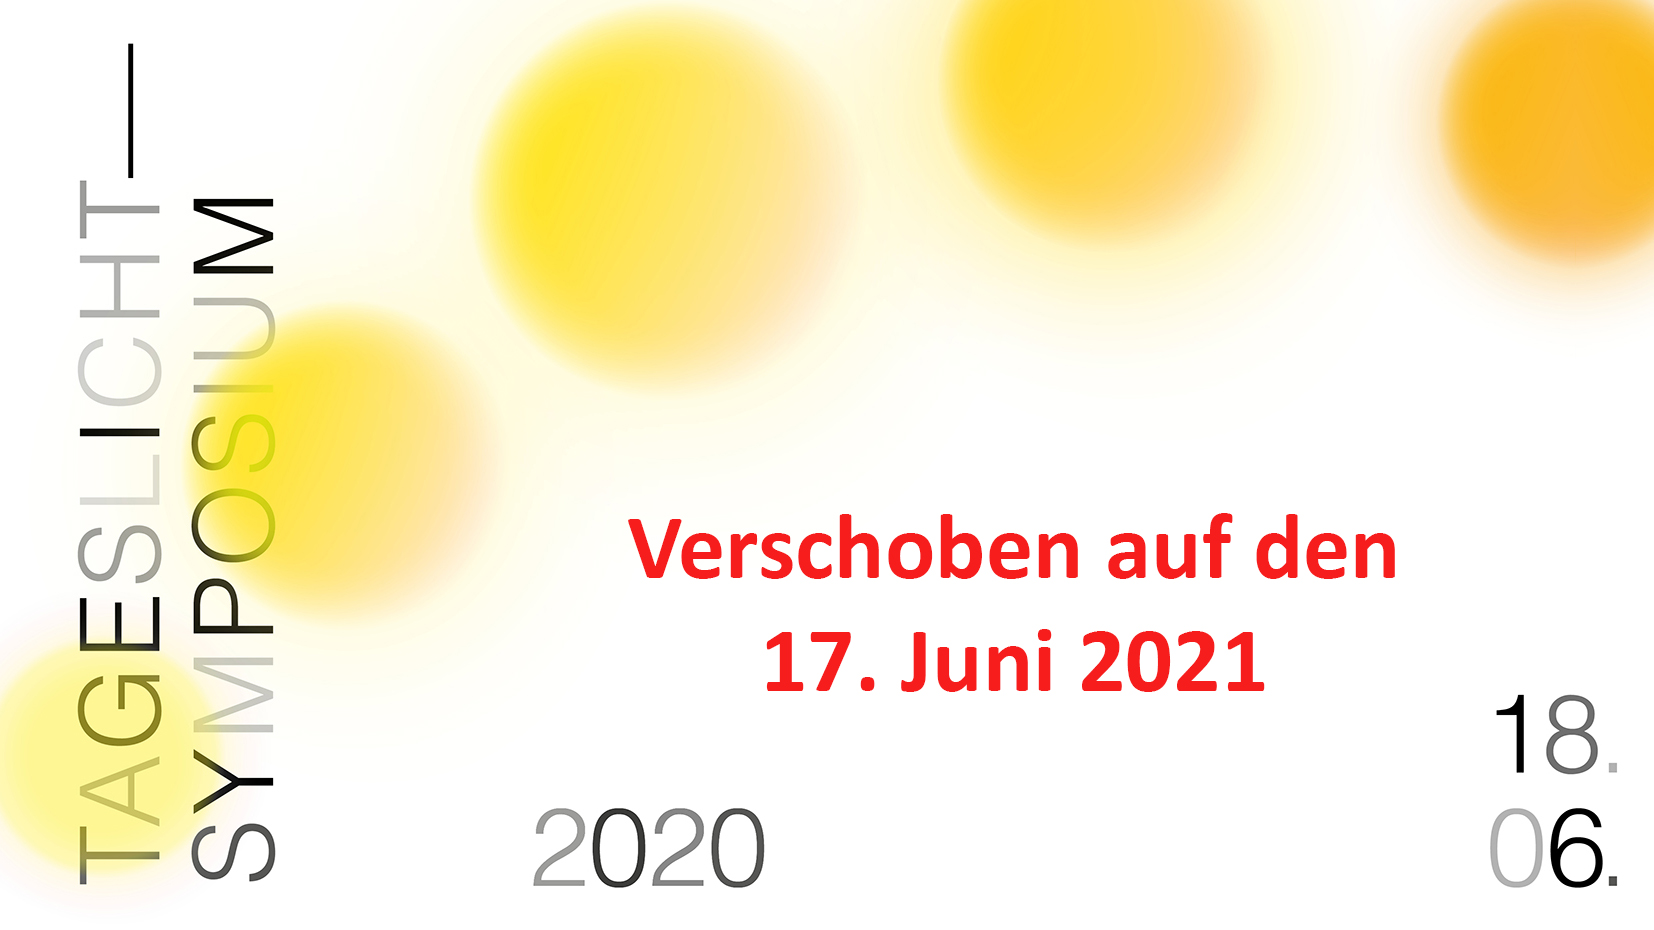 Tageslicht-Symposium 2020 – Verschoben auf 17.6.2021